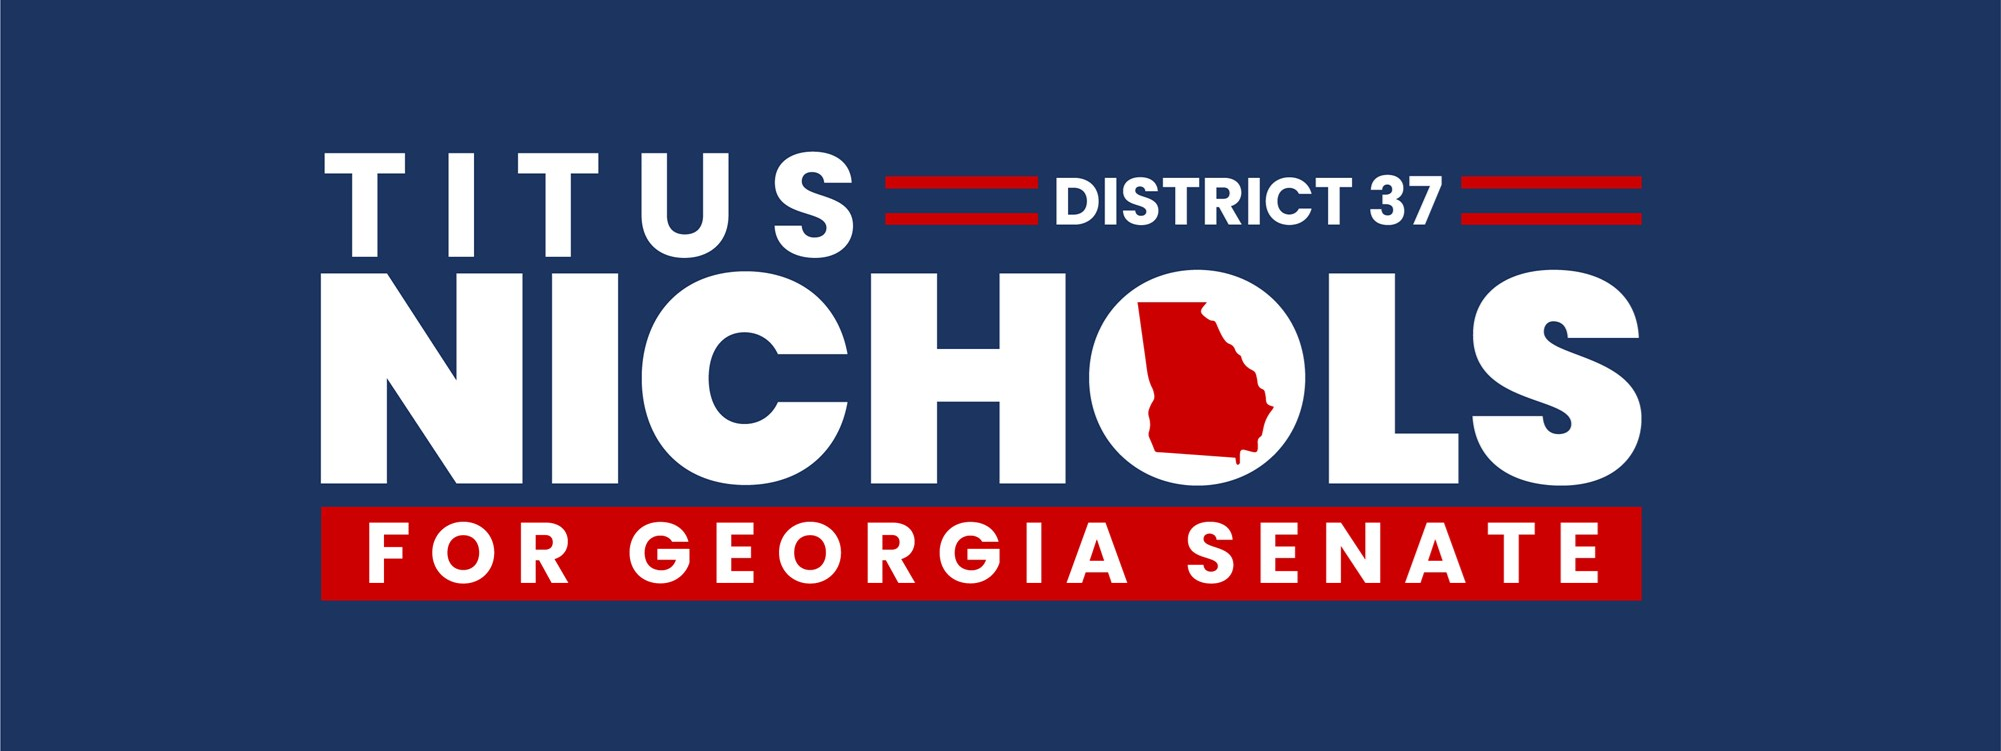 Titus Nichols for Georgia Senate District 37